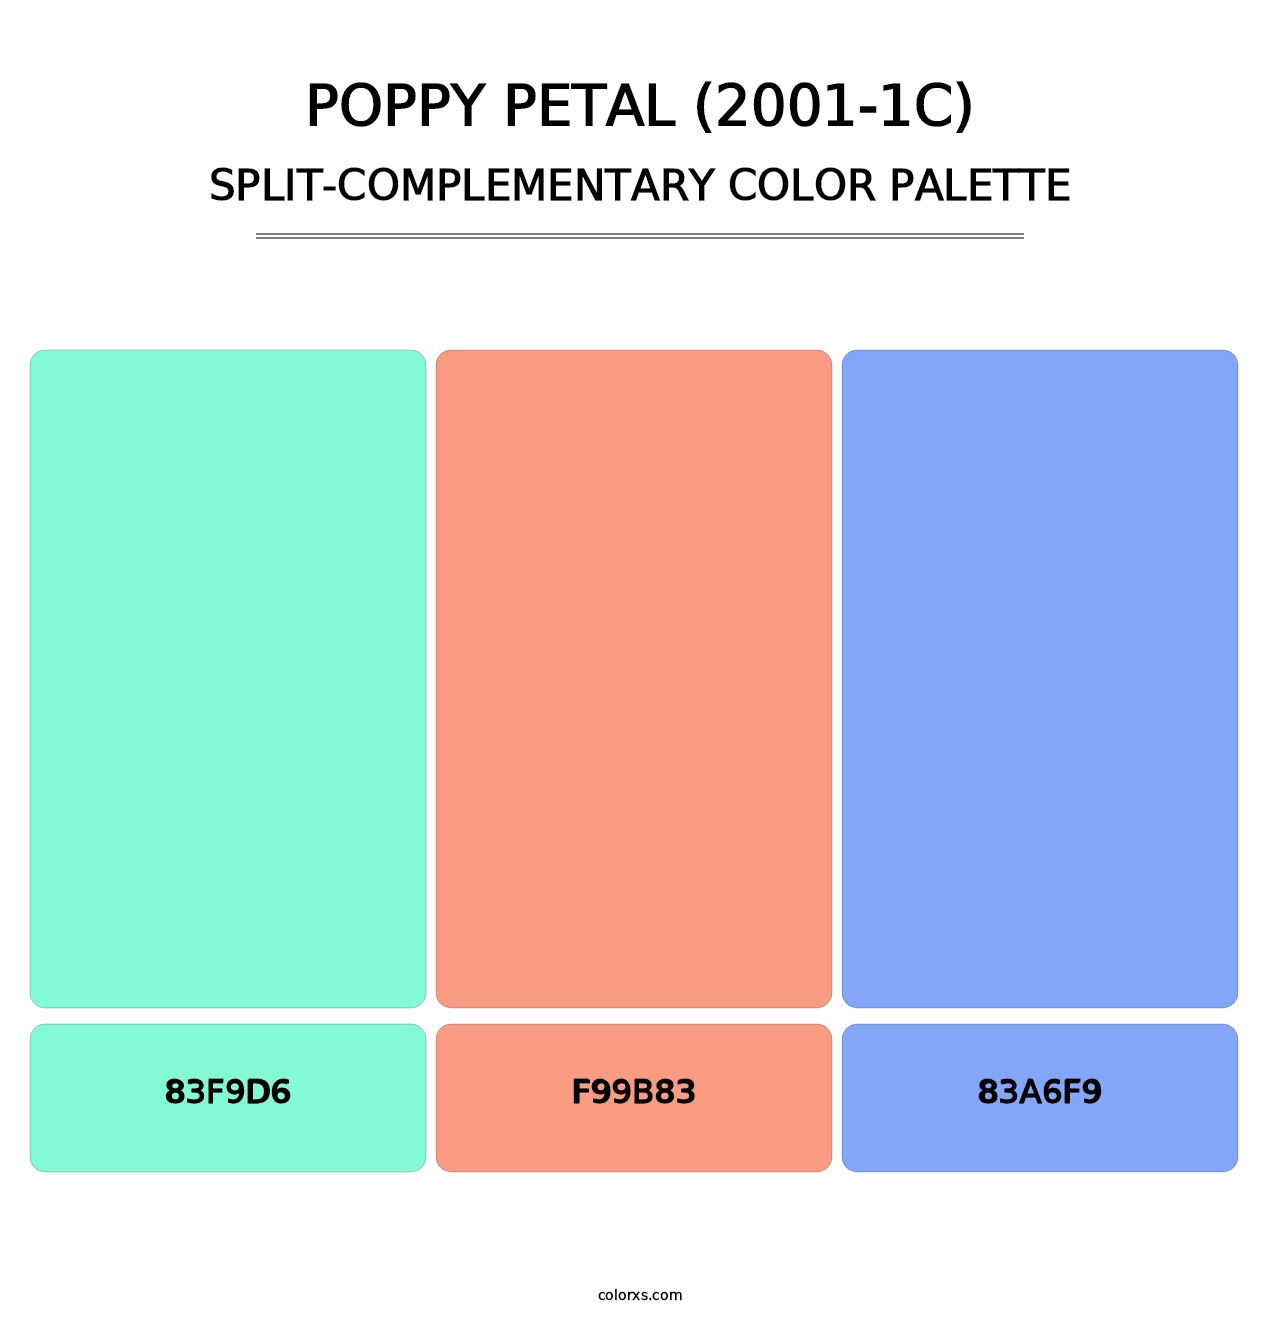 Poppy Petal (2001-1C) - Split-Complementary Color Palette